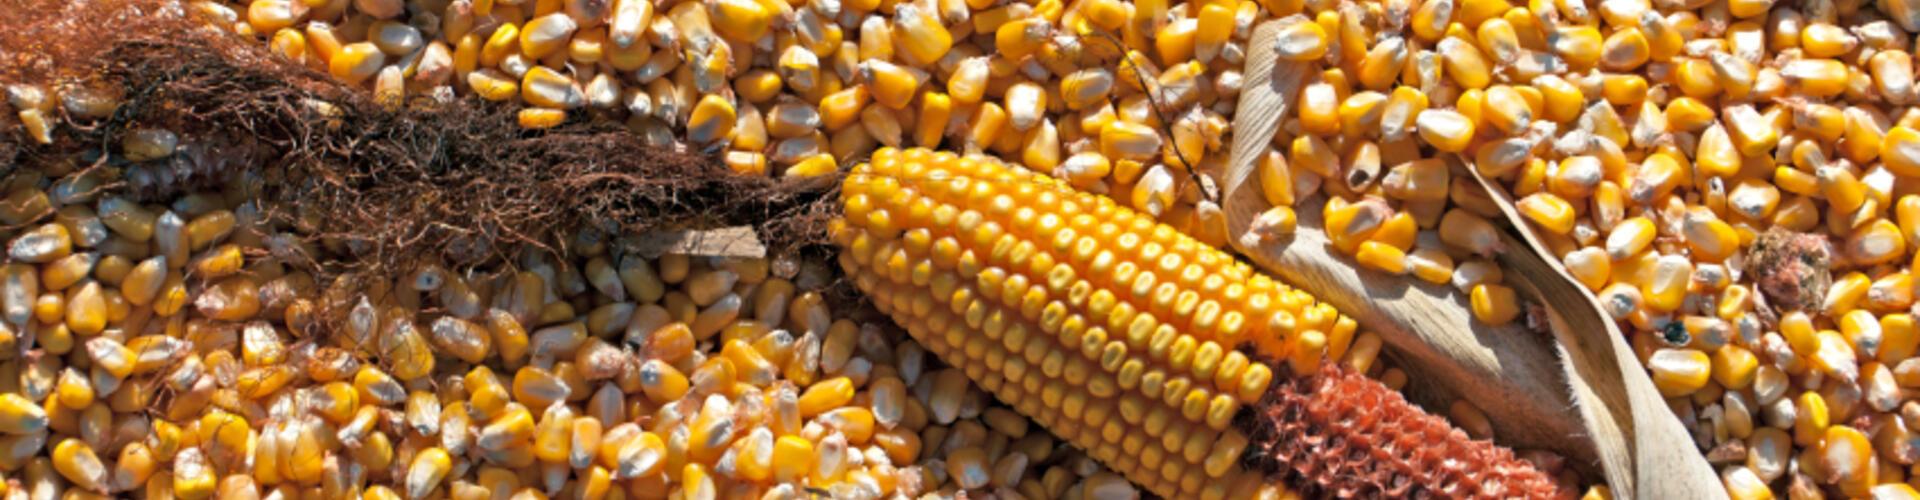 Futtermittelindustrie: Verarbeitung von Mais zur Futtermittelherstellung